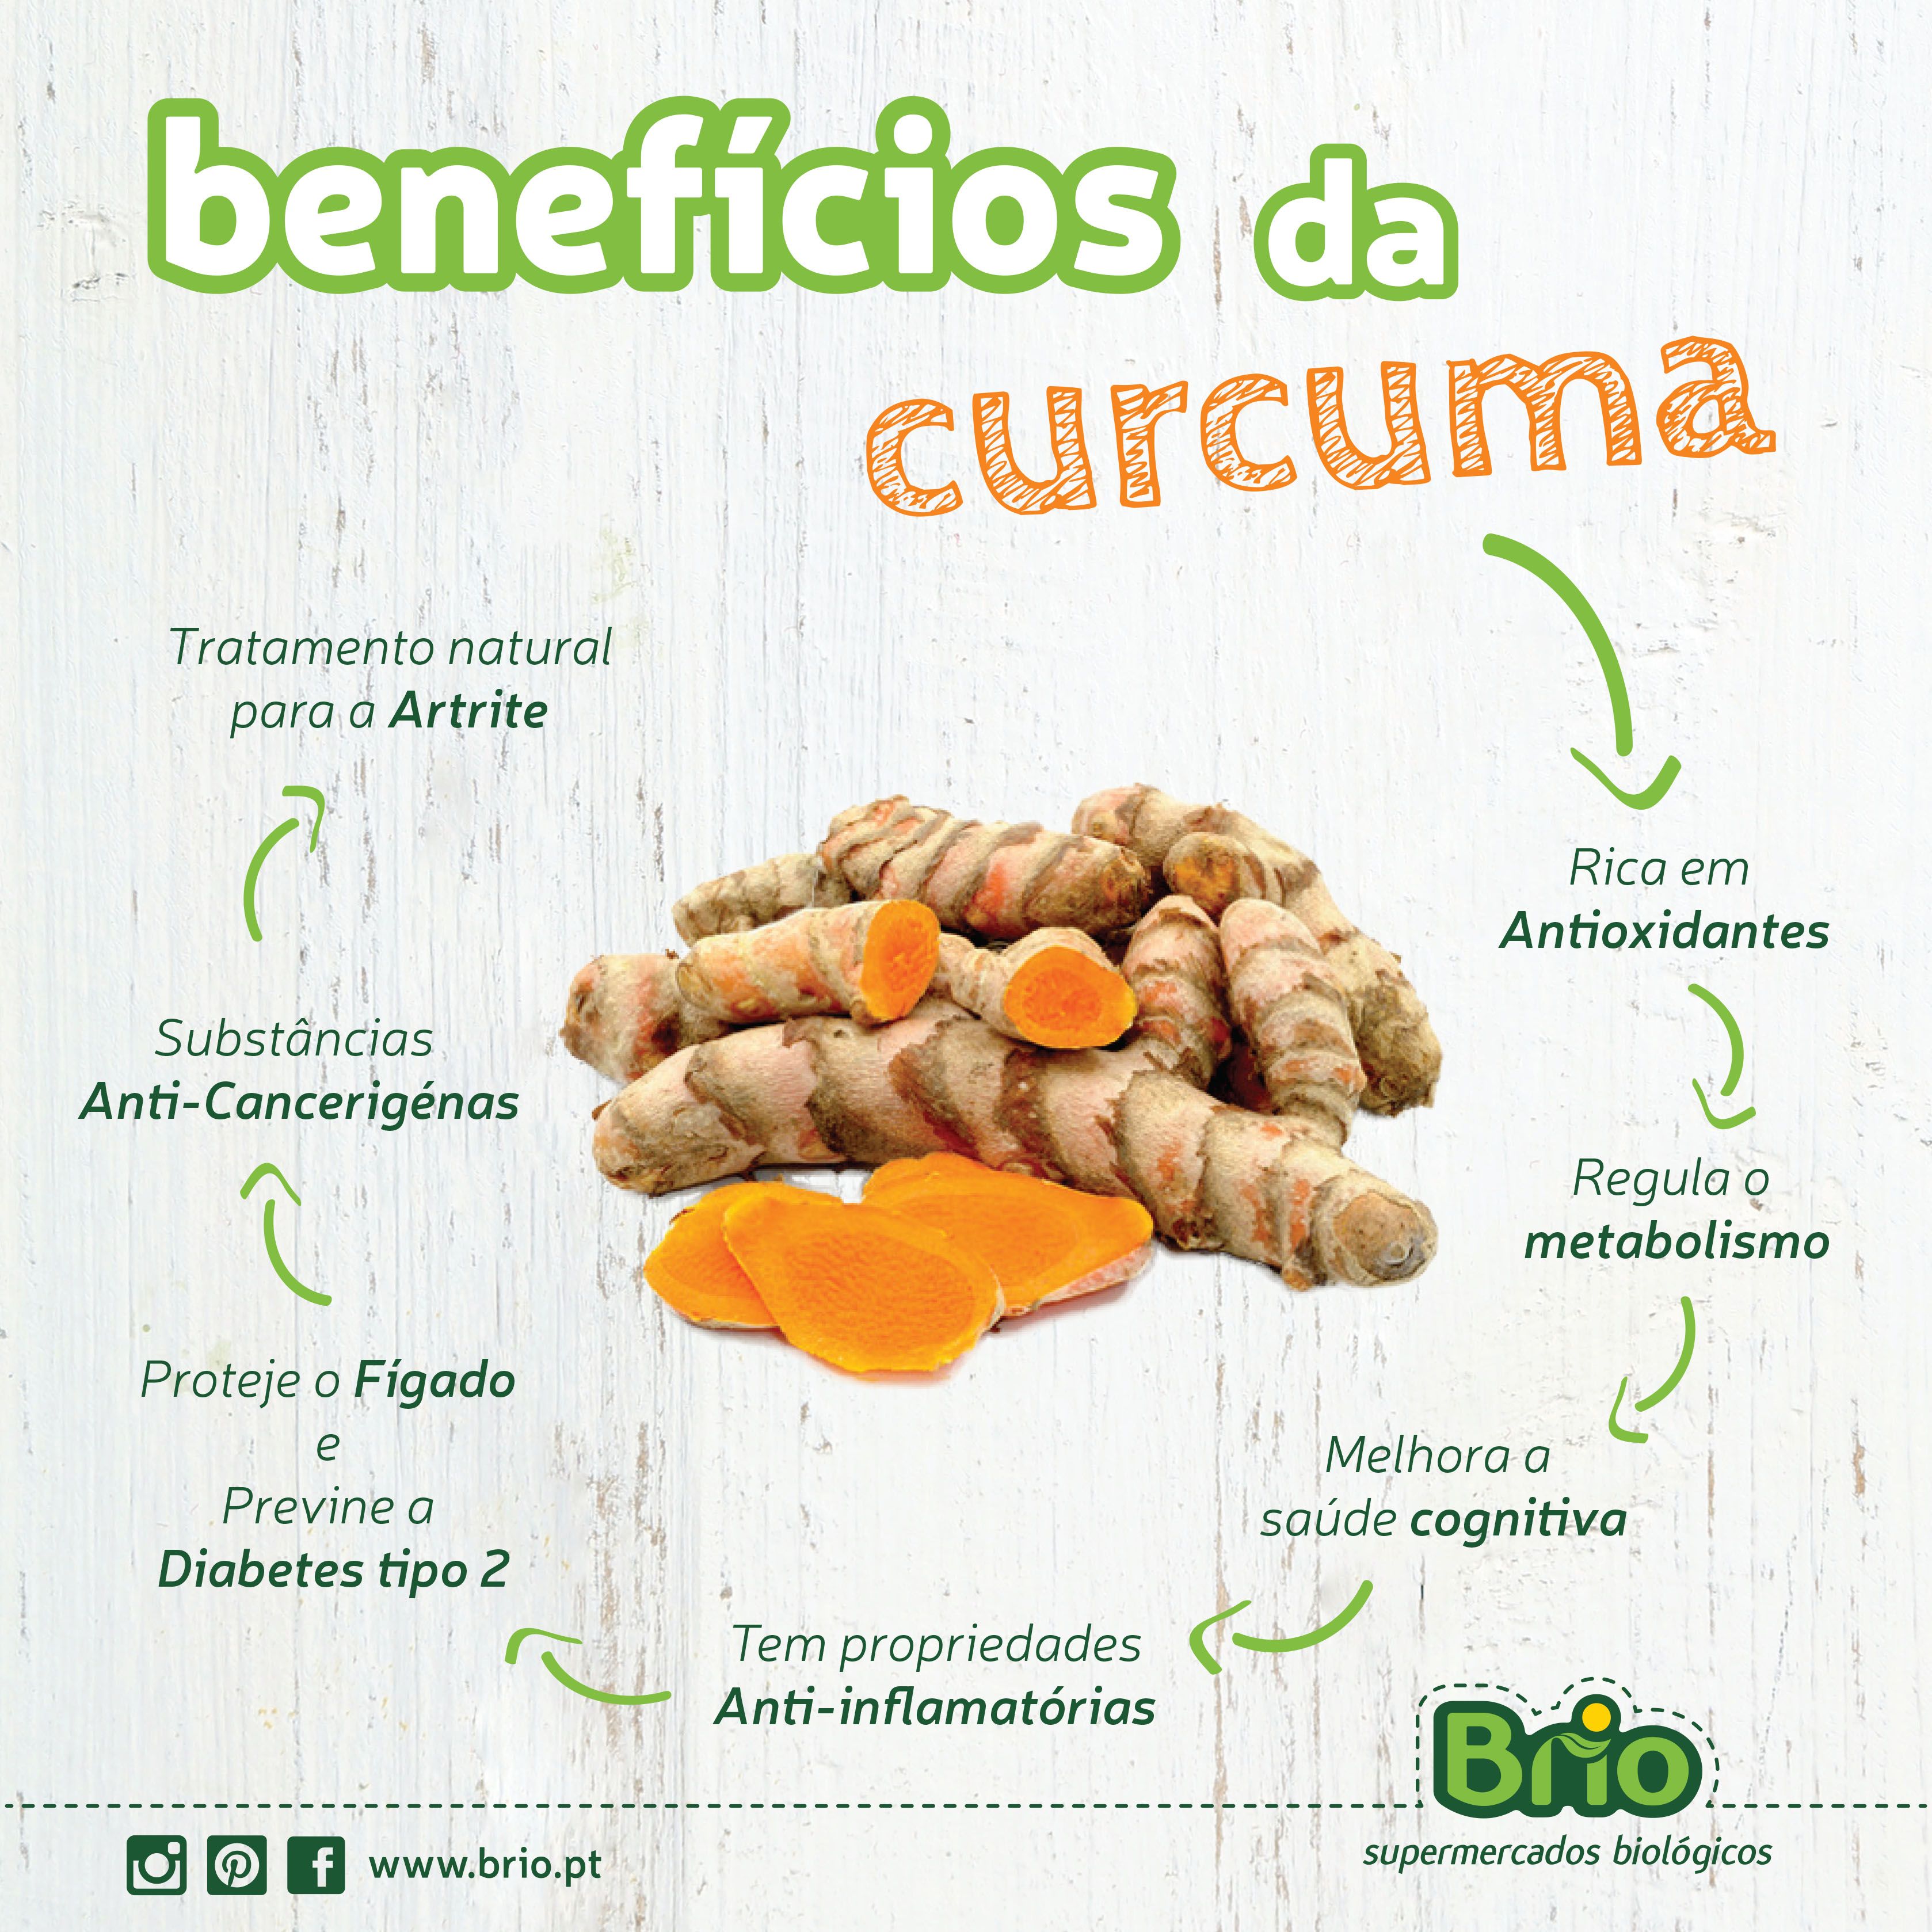 Brio, Supermercados Biológicos - Benefícios da curcuma | Receitas ...